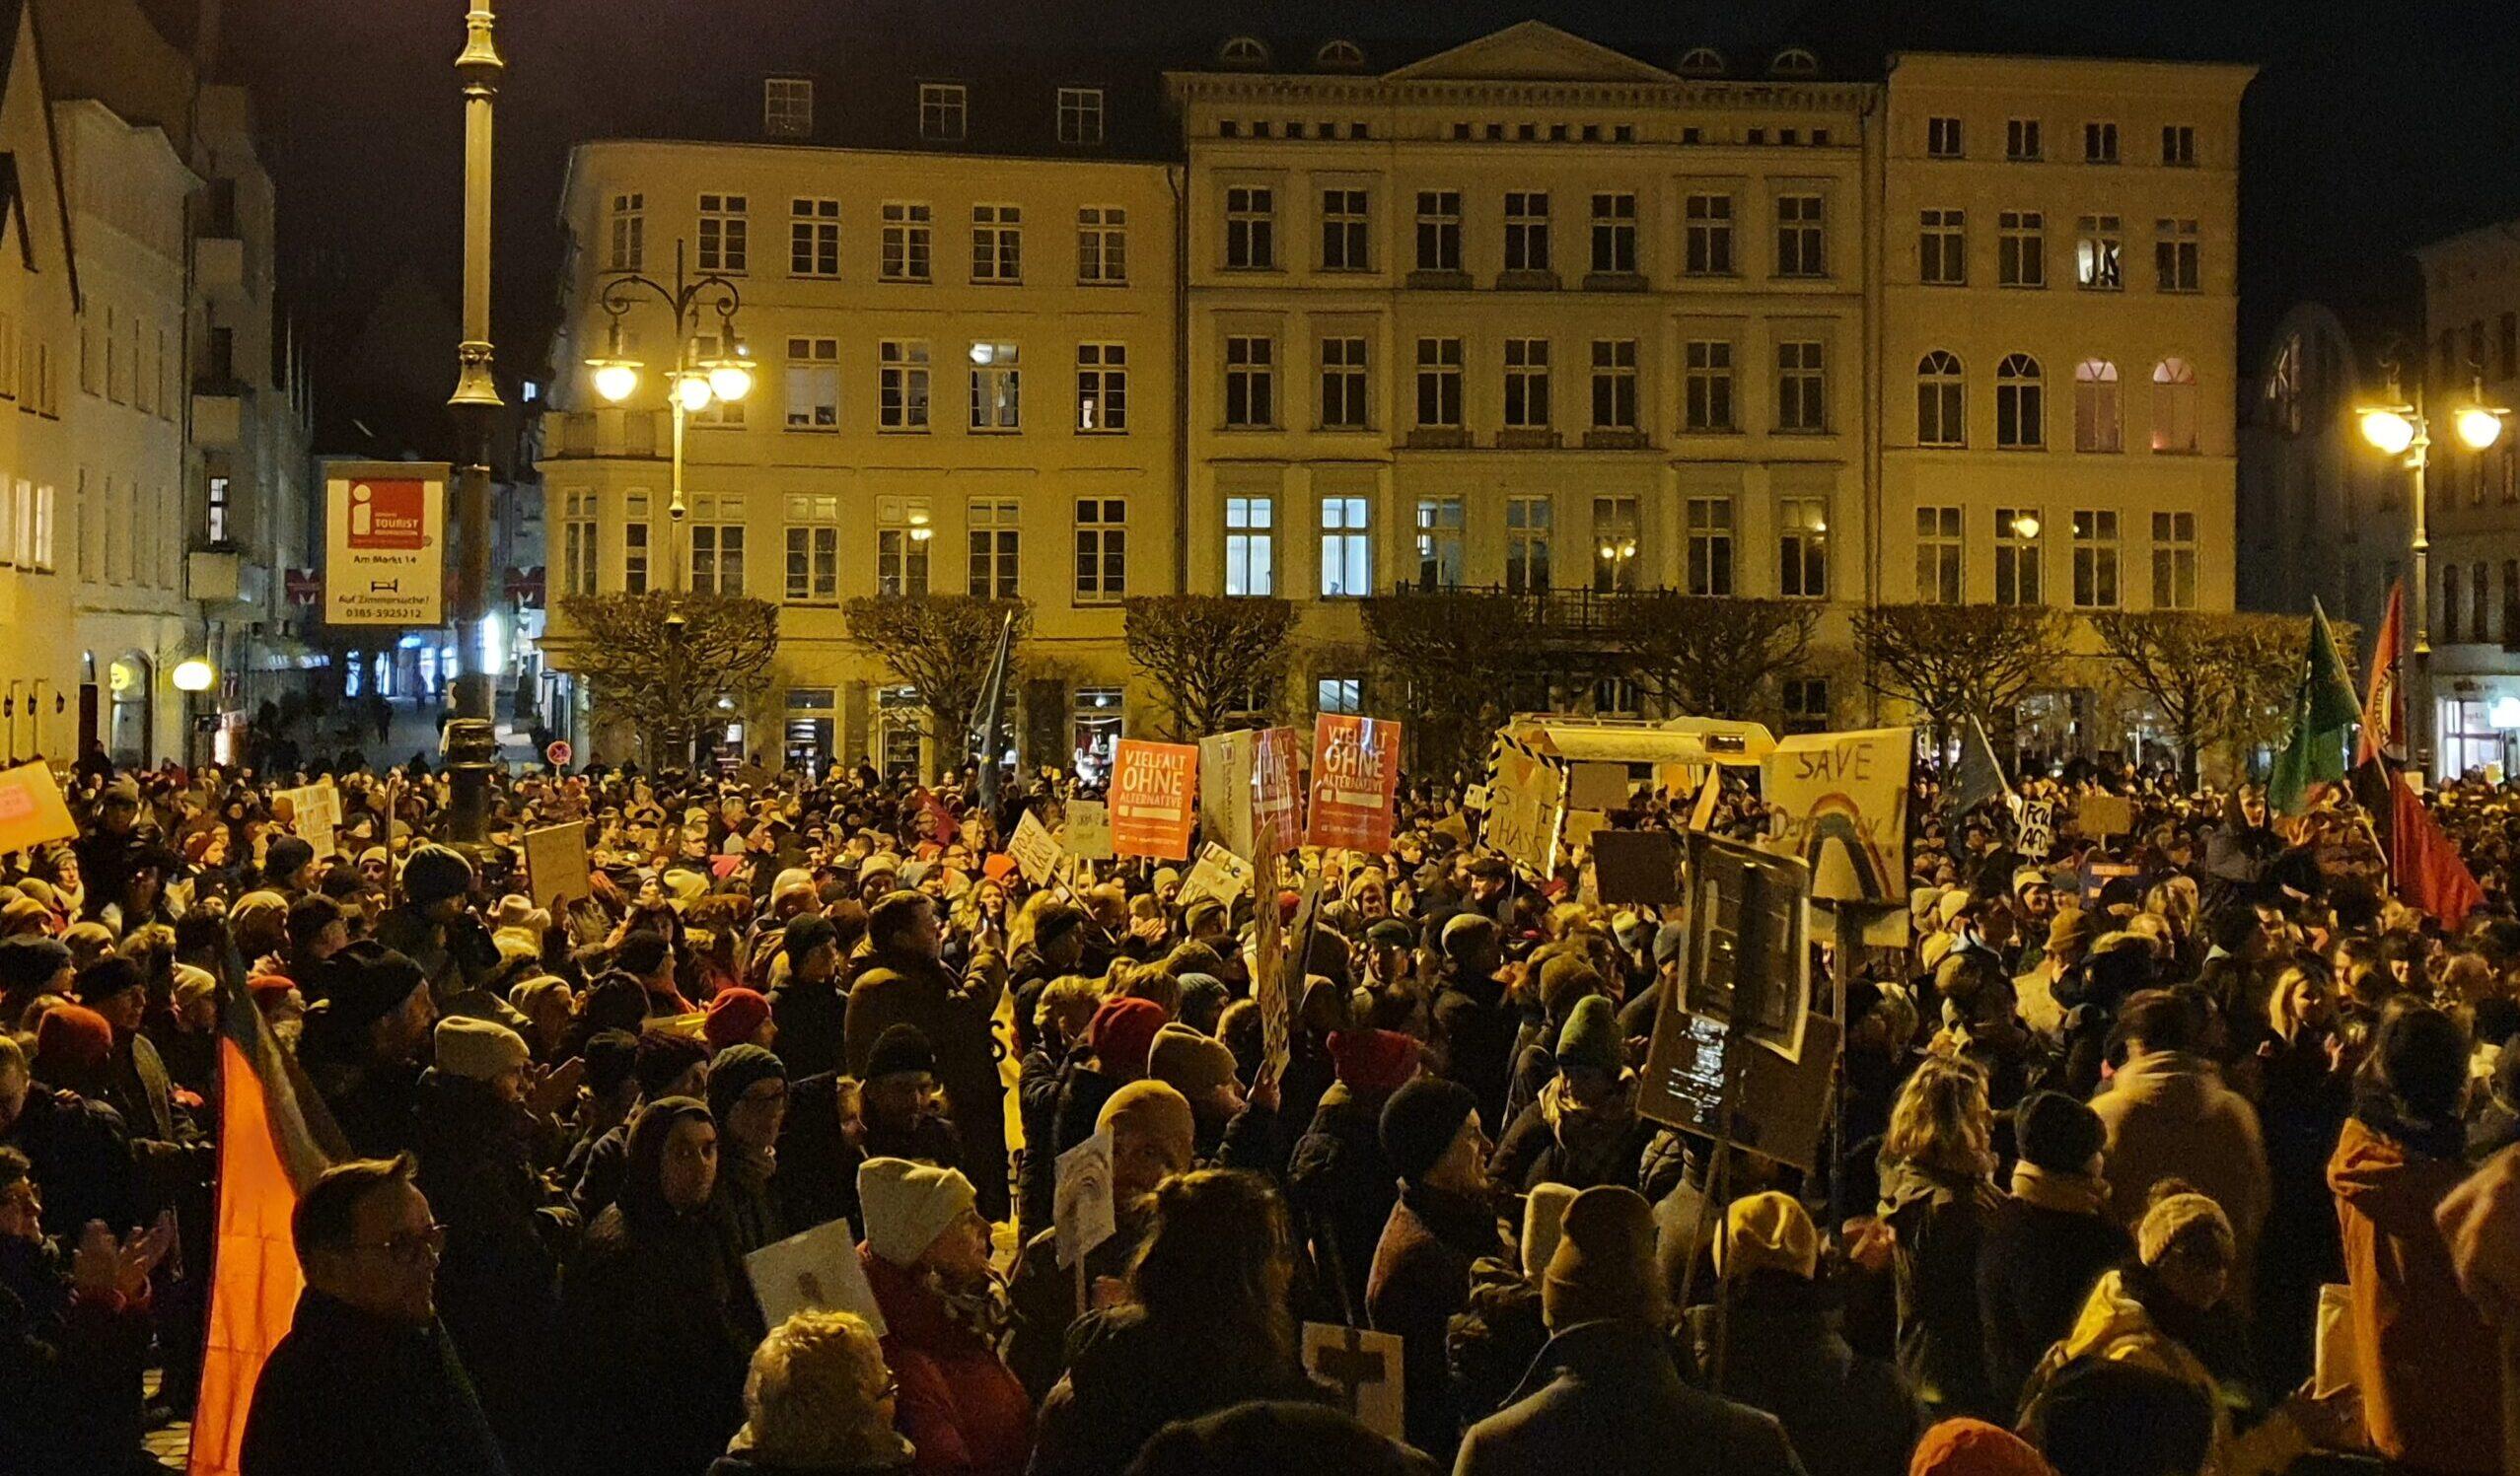 <span style='color:#01688d;font-size:28px;'>Schwerin für alle:</span> <br>2.500 Menschen demonstrieren gegen Rechtsextremismus 